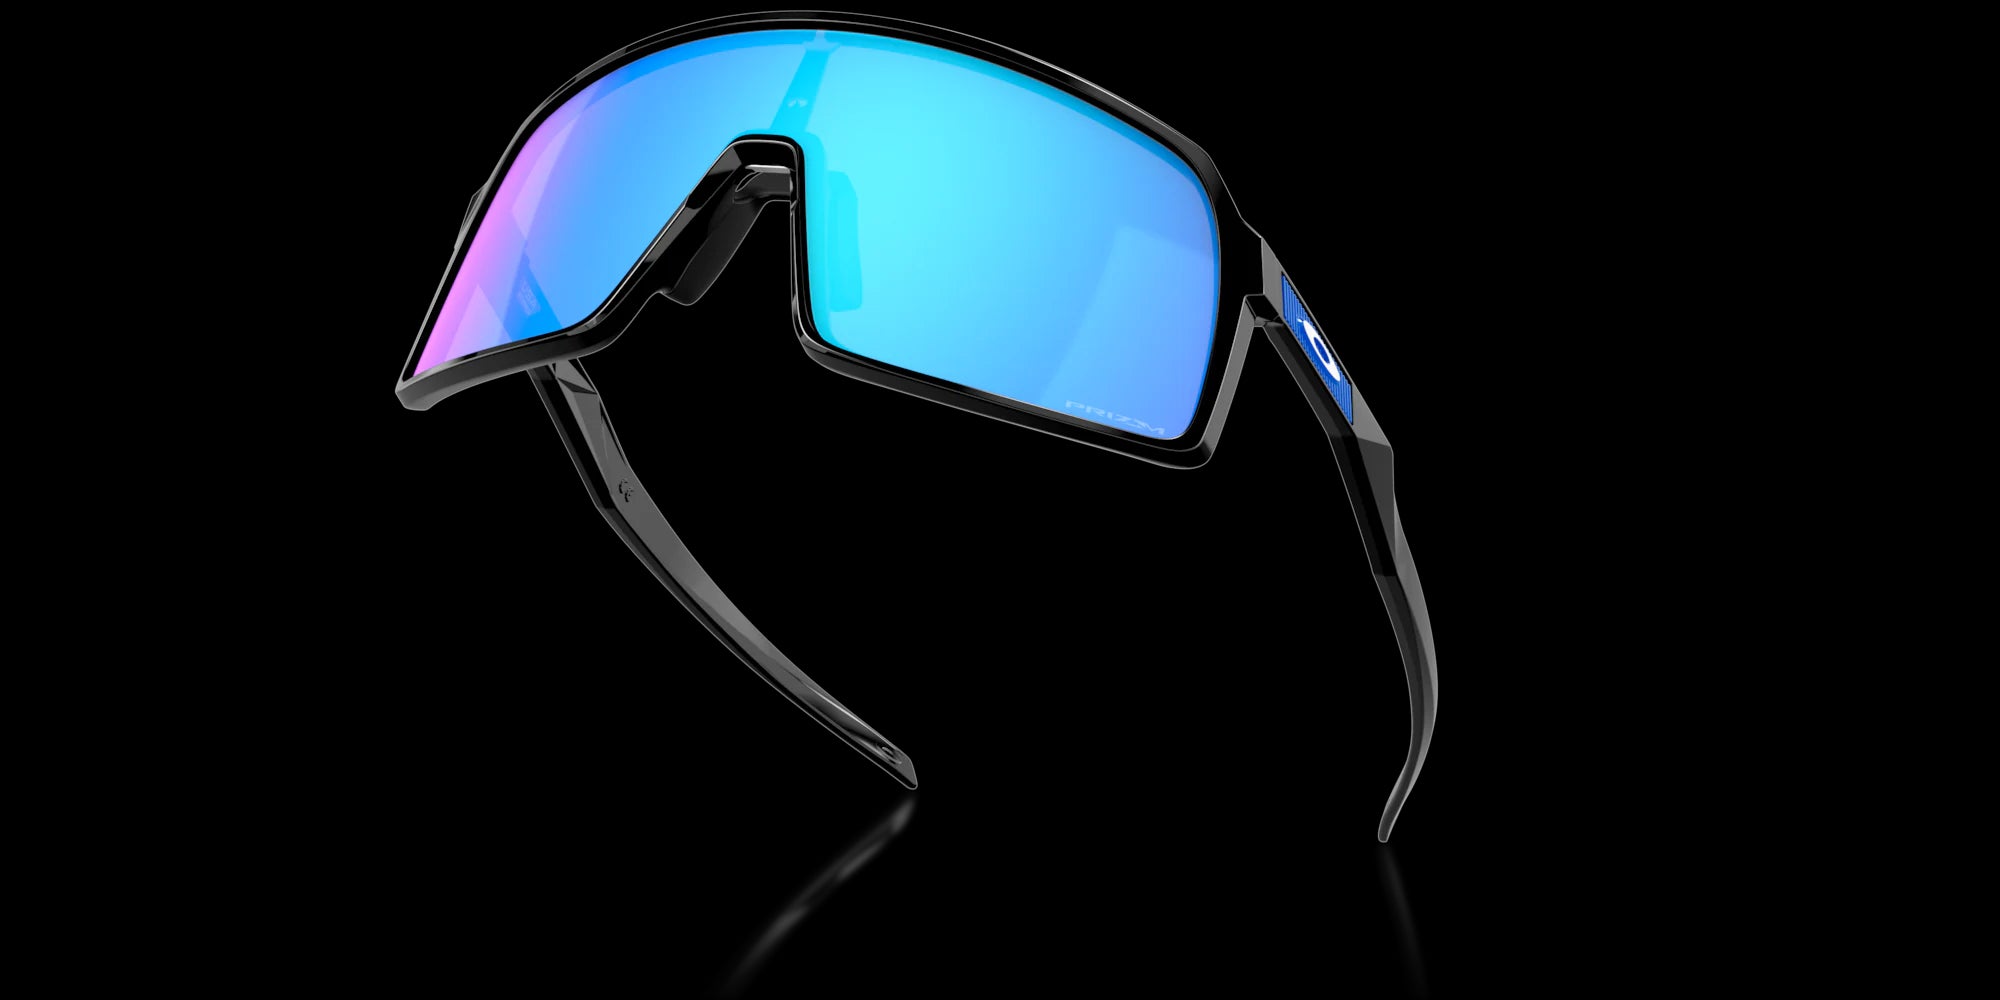 Black Sutro sunglasses from Oakley